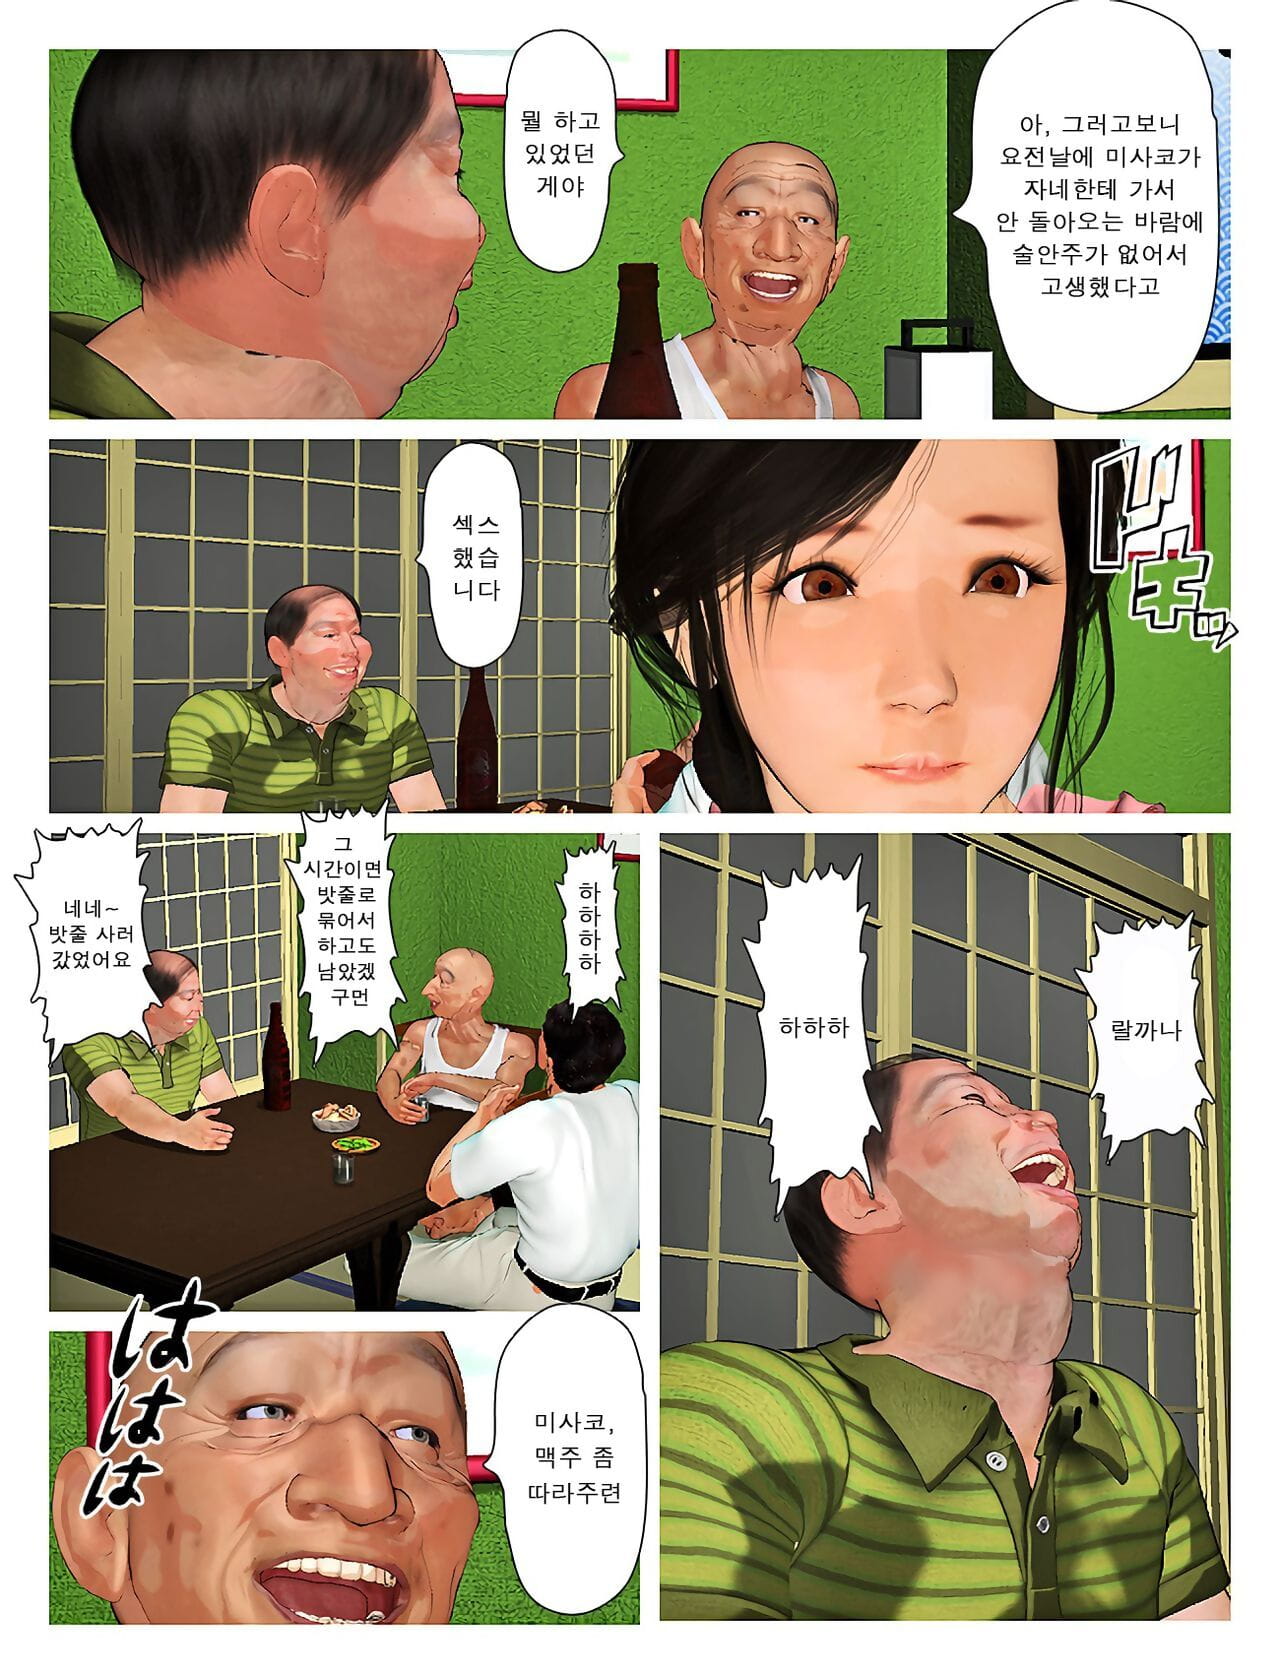 Kyou no Misako-san 2019:3 - 오늘의 미사코씨 2019:3 - part 2 page 1